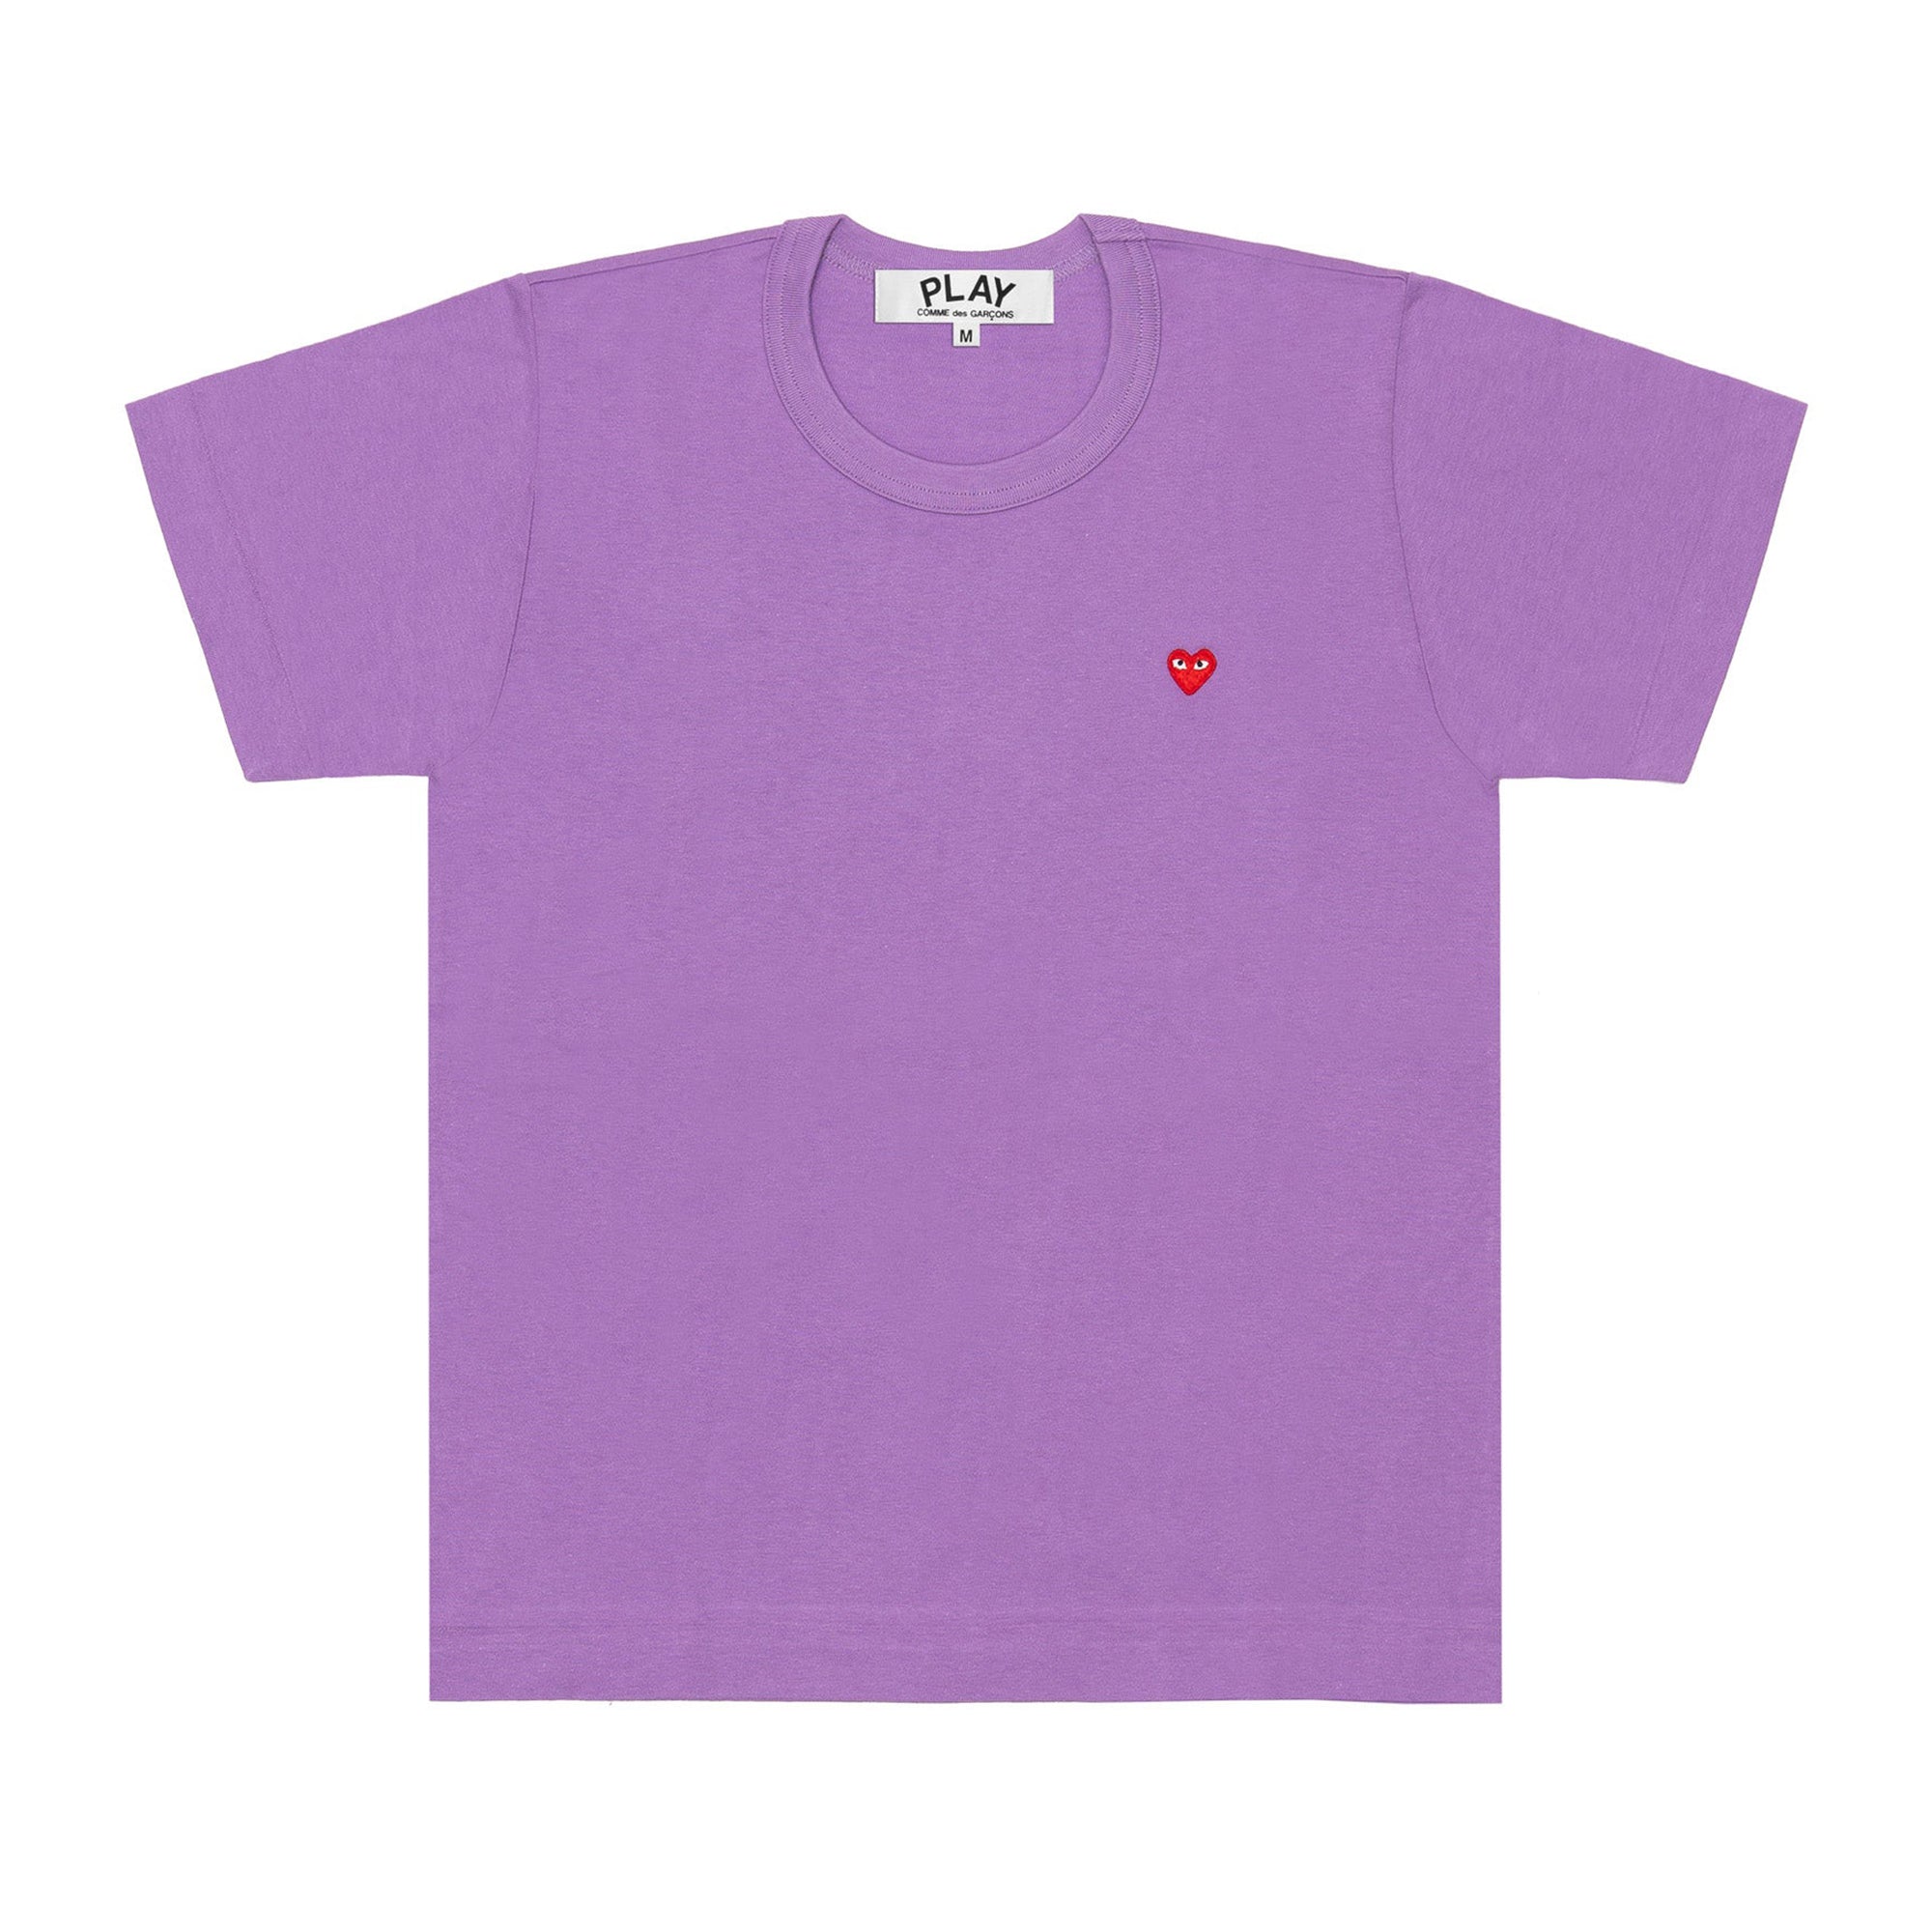 Play Comme des Garçons - Small Heart T-Shirt - (Purple) view 1